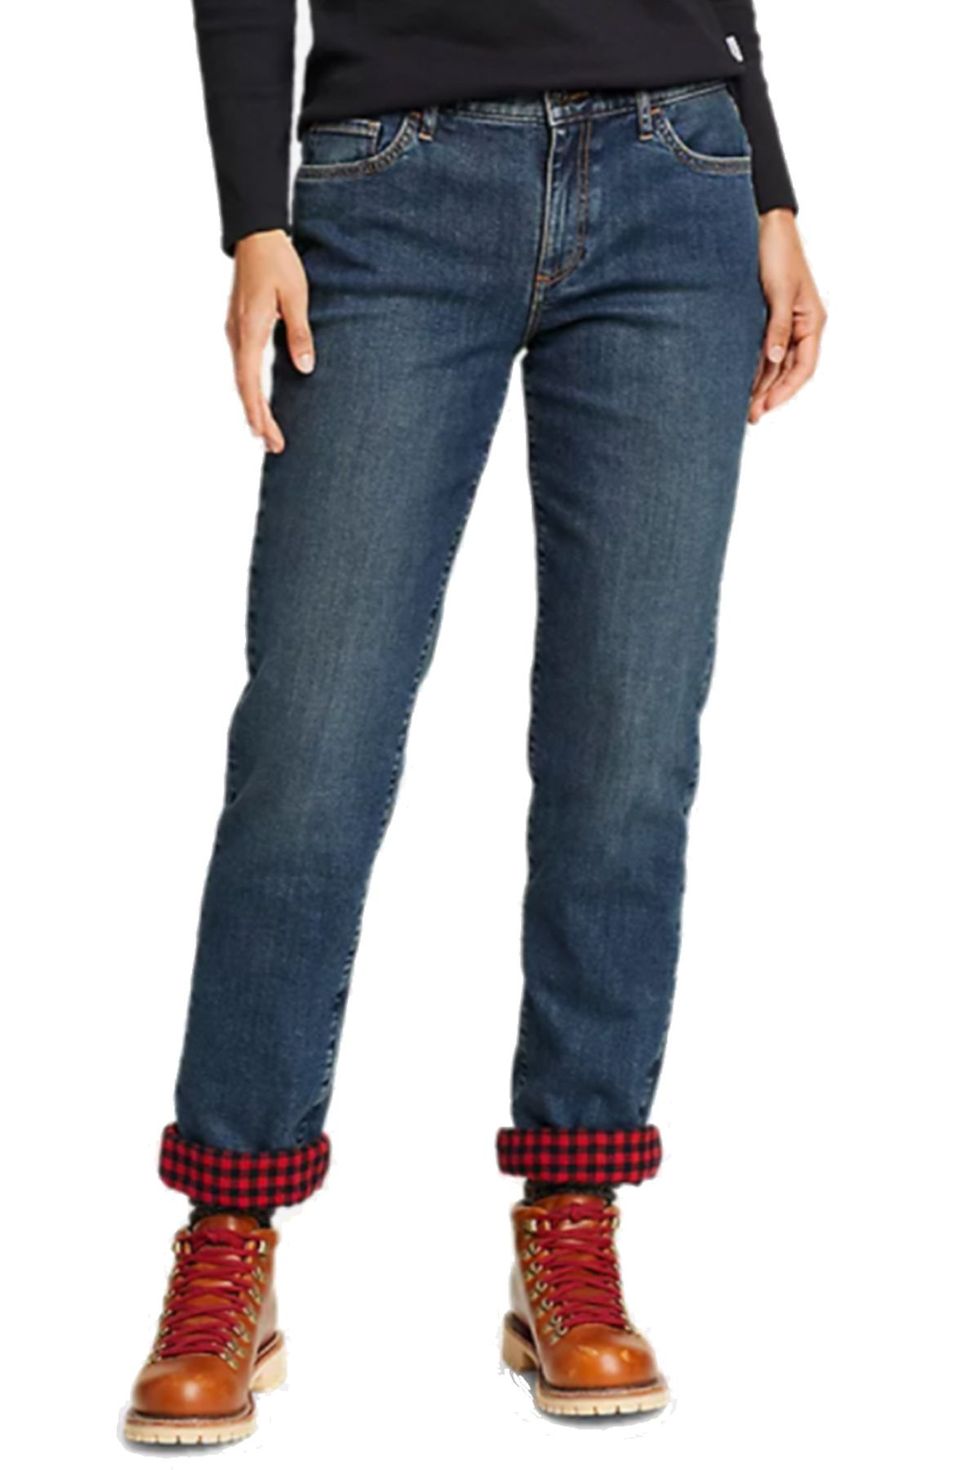 Women's Fleece Lined Jeans Thermal Flannel Lined Jeans Winter